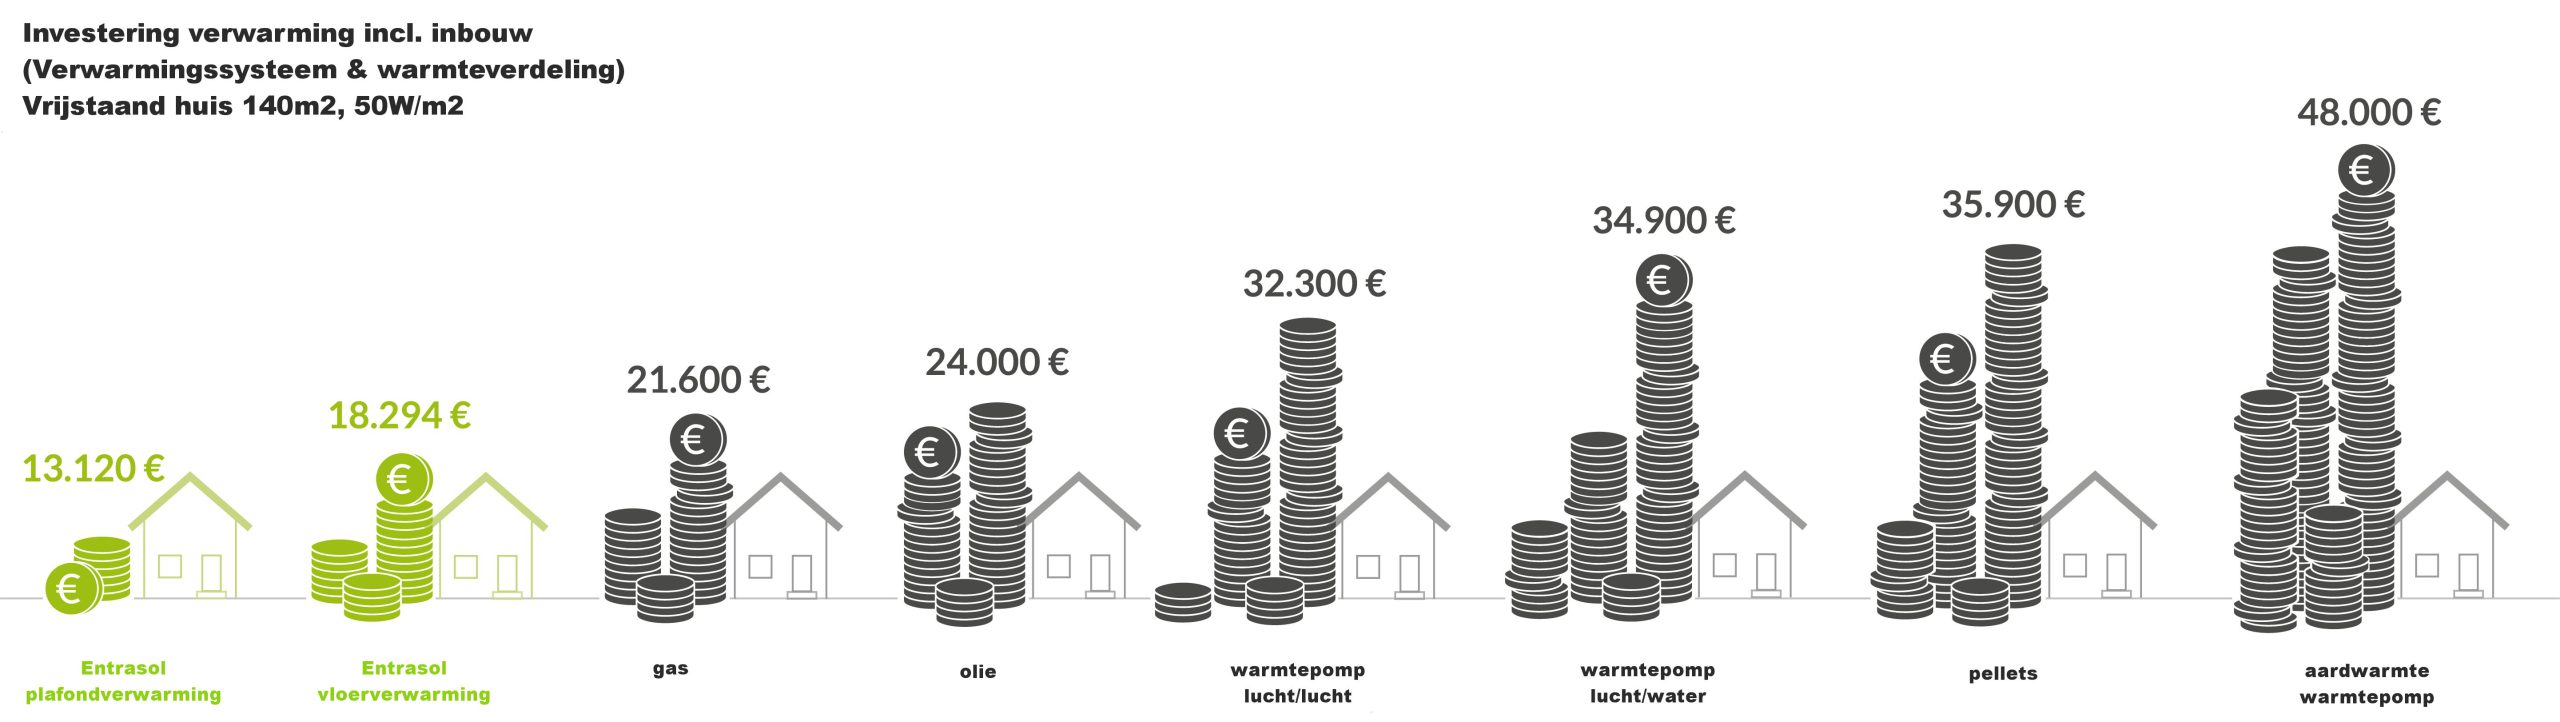  Infographic van de investeringskosten van verwarmingsfolie van Entrasol in vergelijking met andere conventionele verwarmingssystemen.